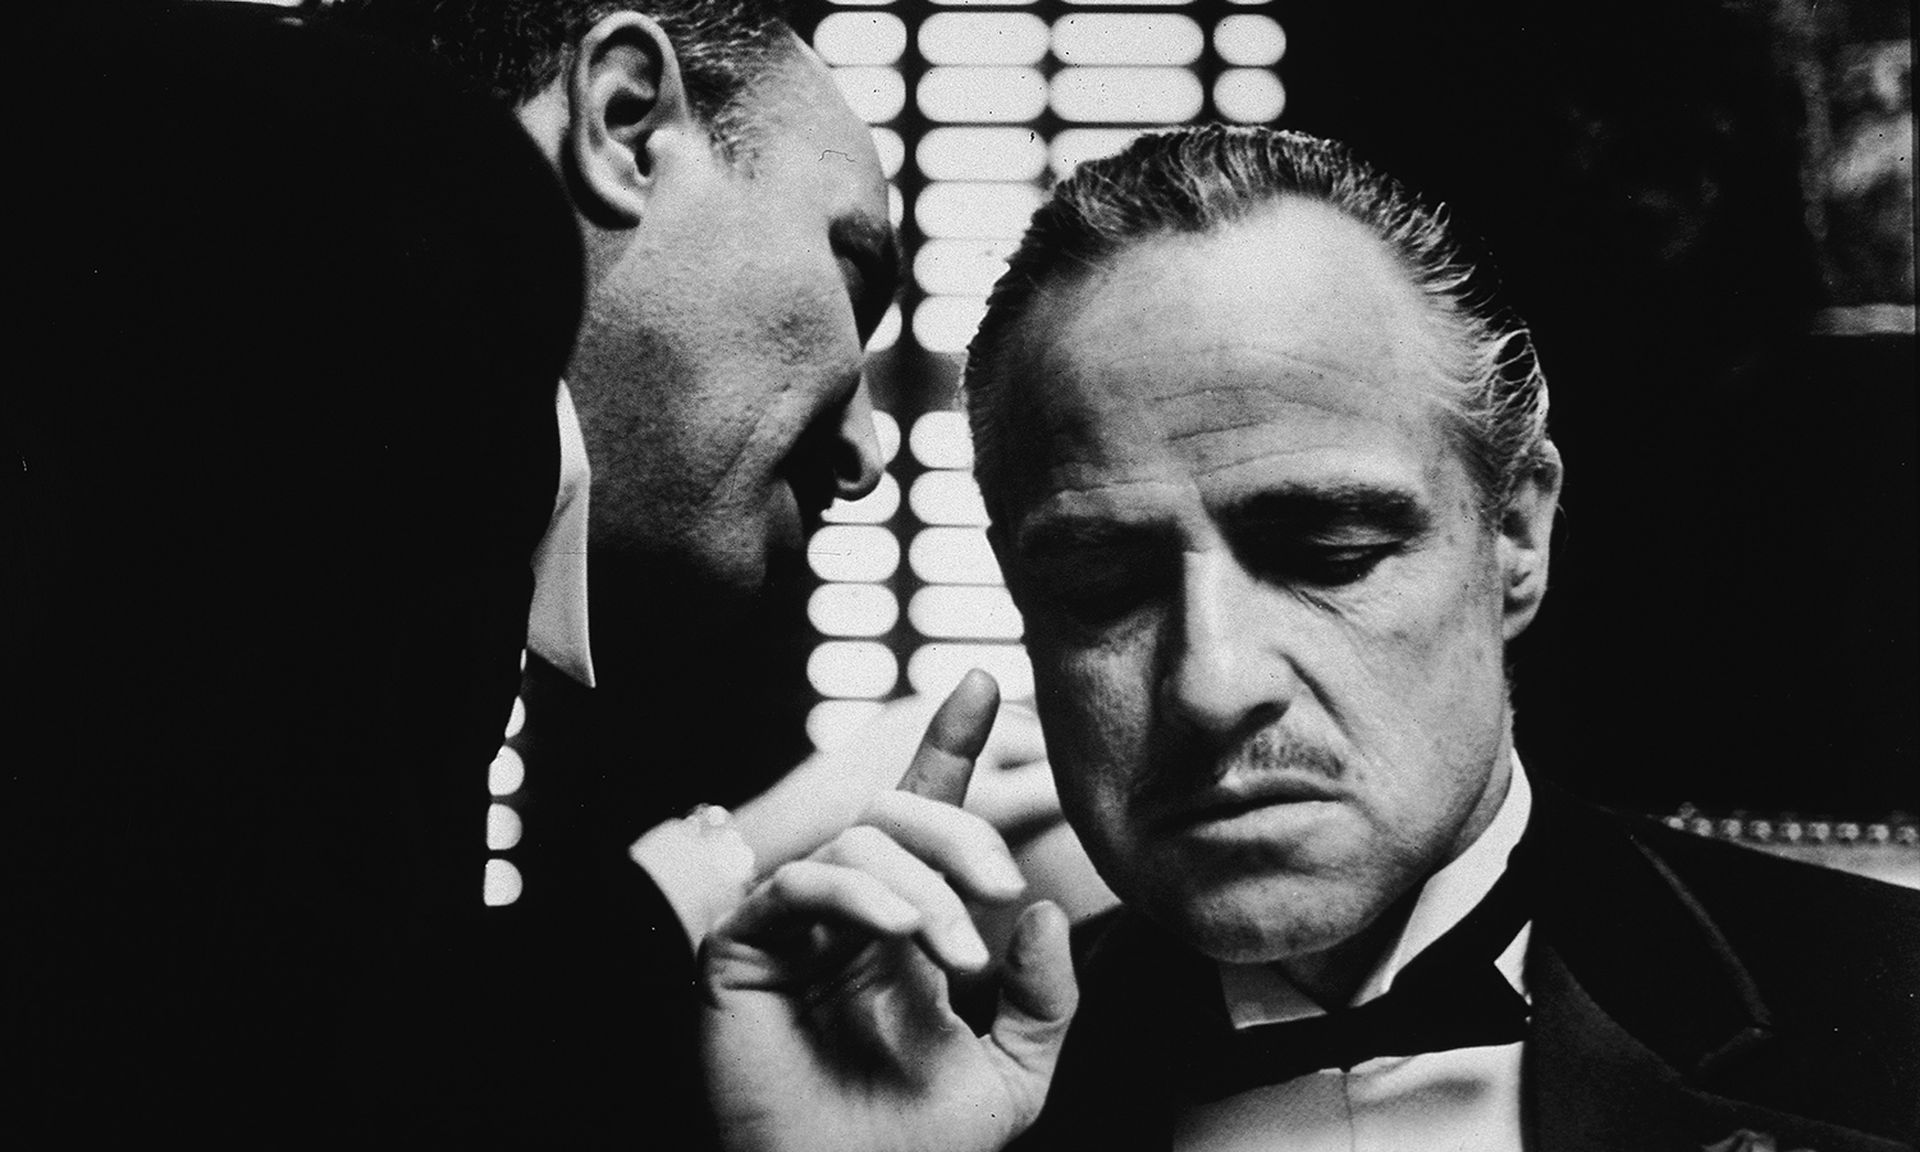 Marlon Brando in the film "The Godfather."